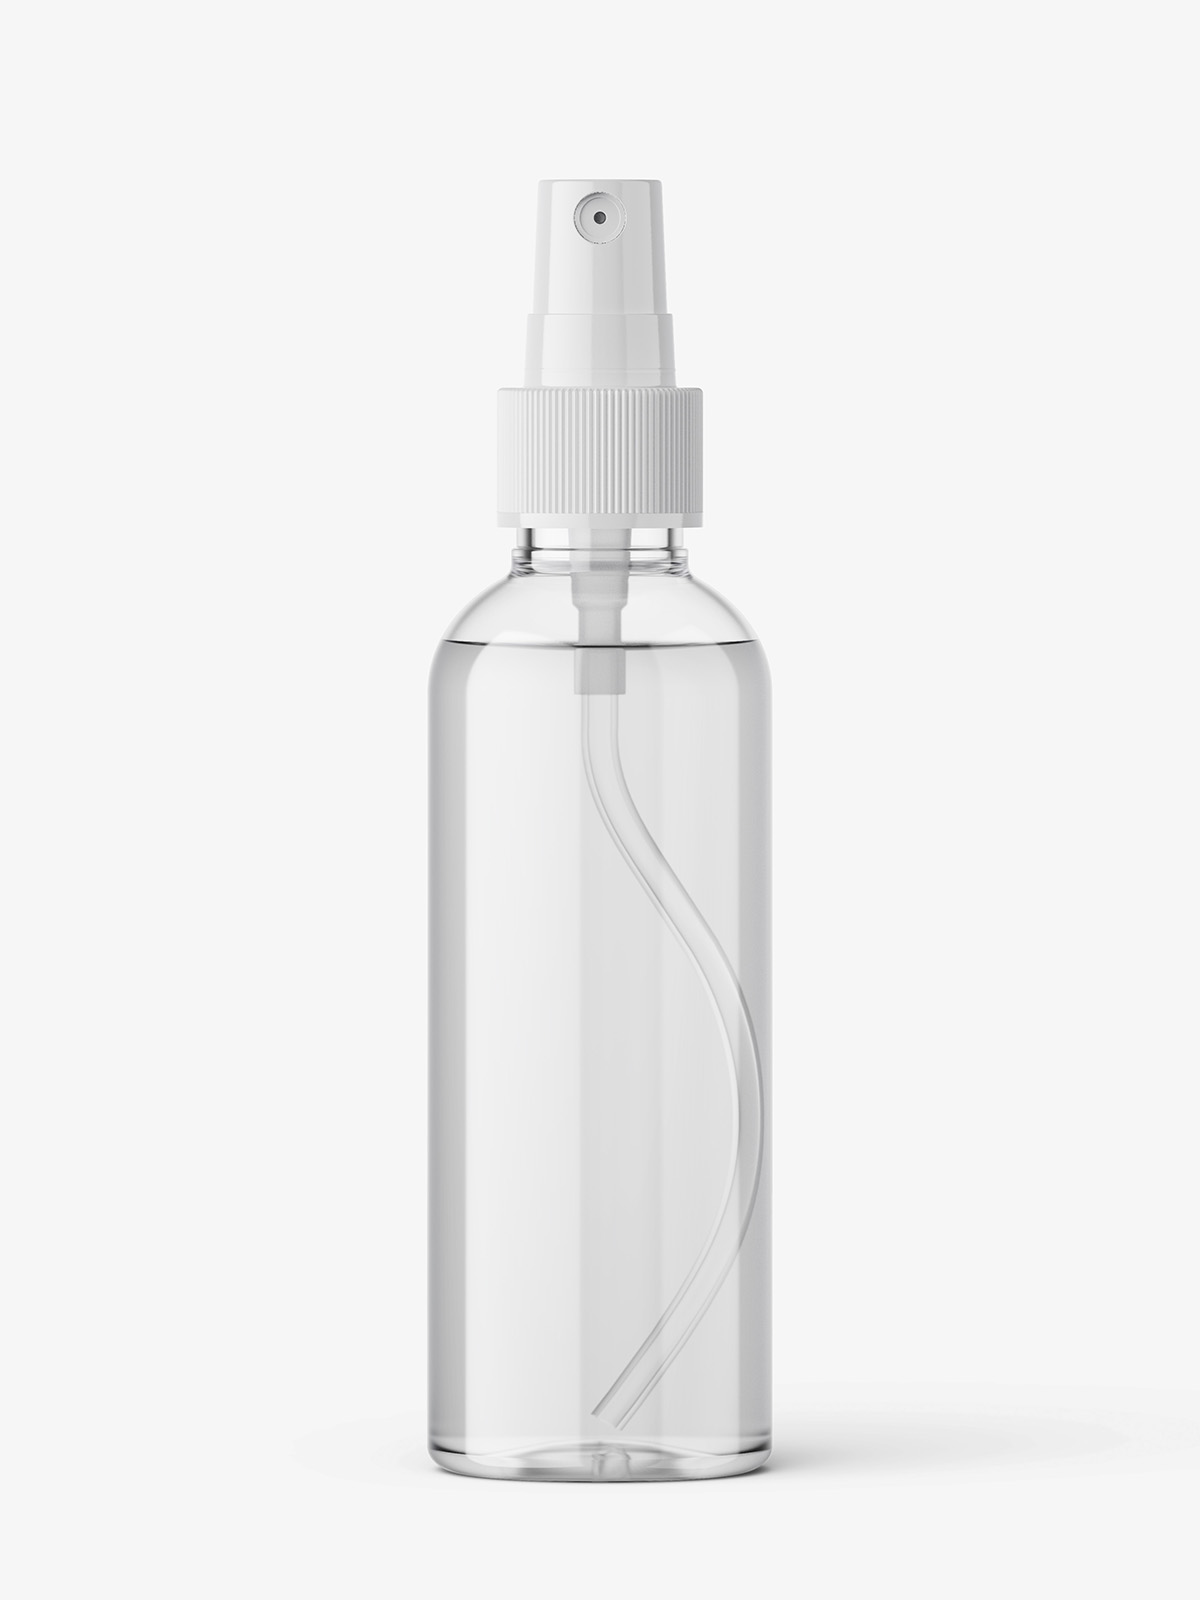 Download Transparent mist spray bottle mockup - Smarty Mockups